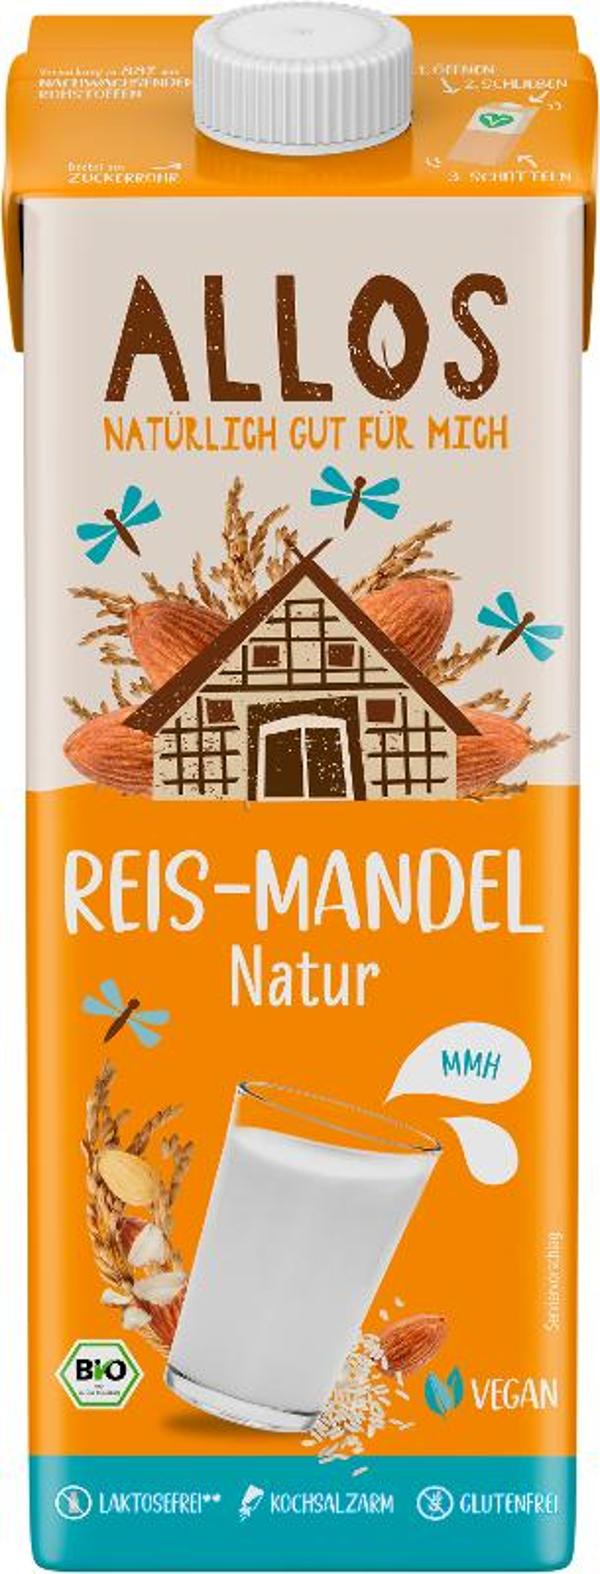 Produktfoto zu Reis-Mandel Drink Naturell